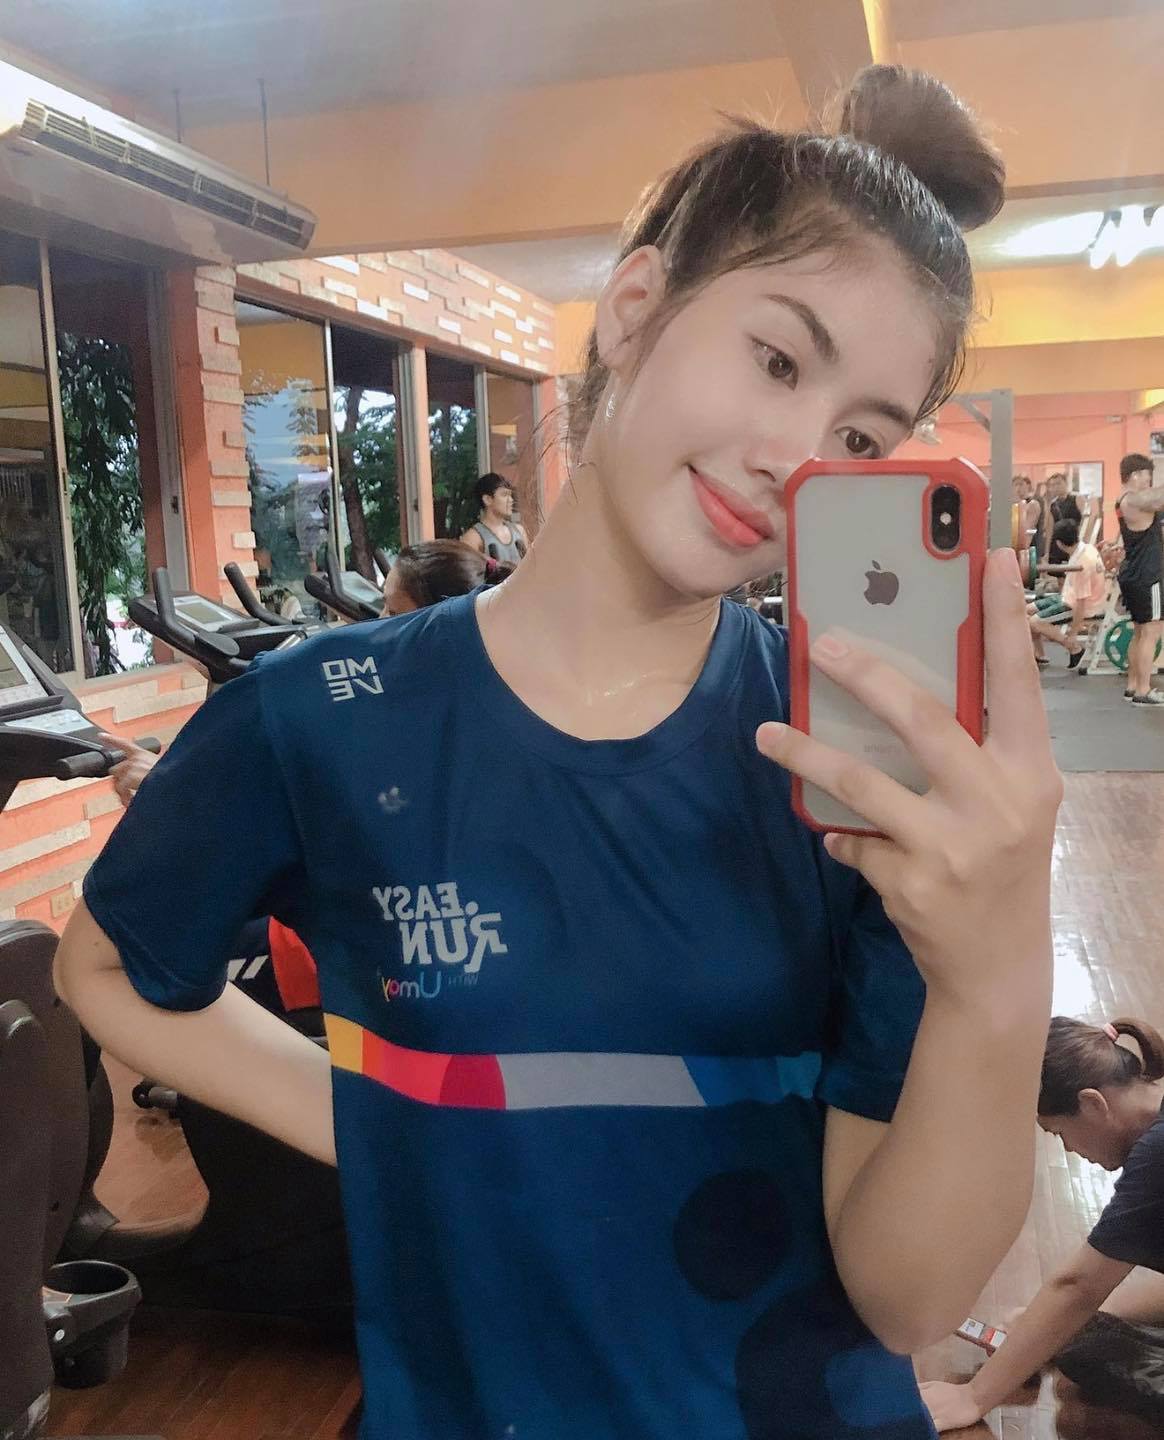 Nhan sắc hot girl bóng chuyền Thái Lan giải nghệ ở tuổi đôi mươi giống Thu Huyền - Ảnh 7.